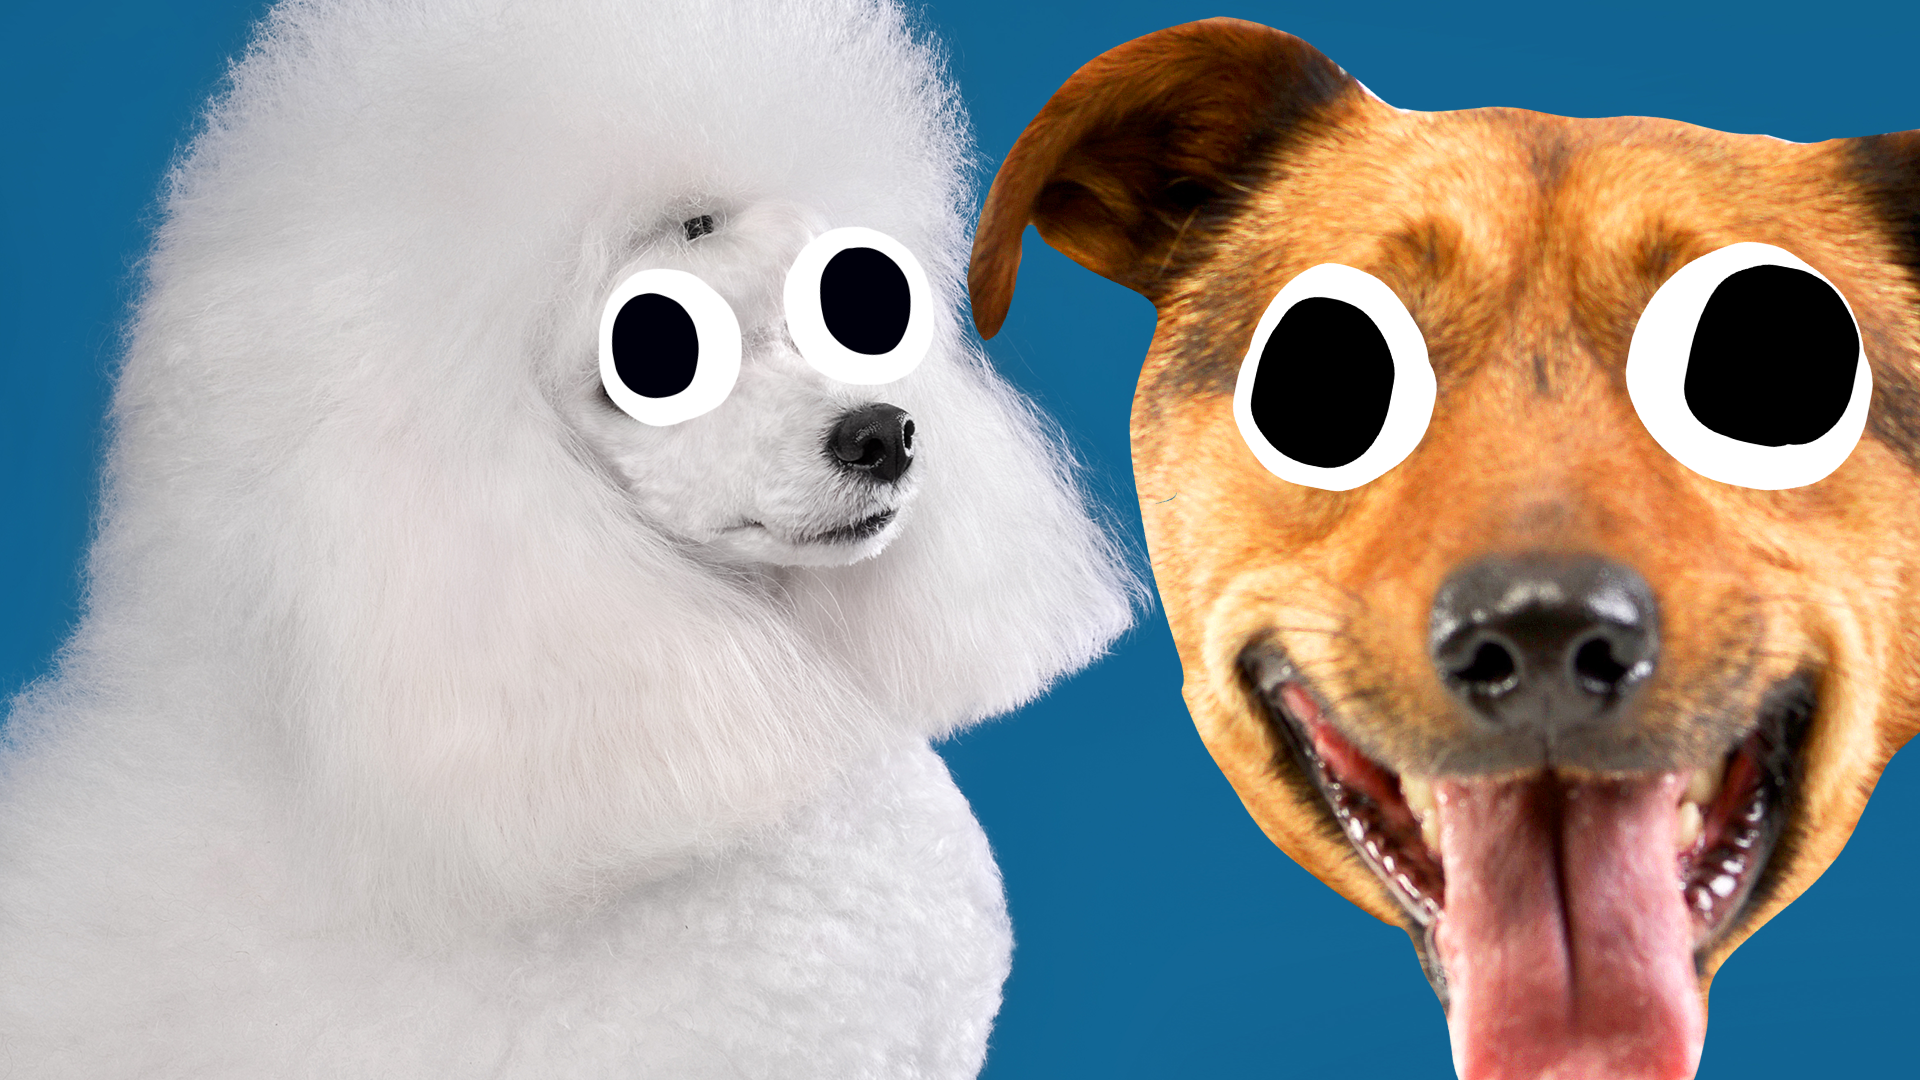 Poodle and goofy Beano dog